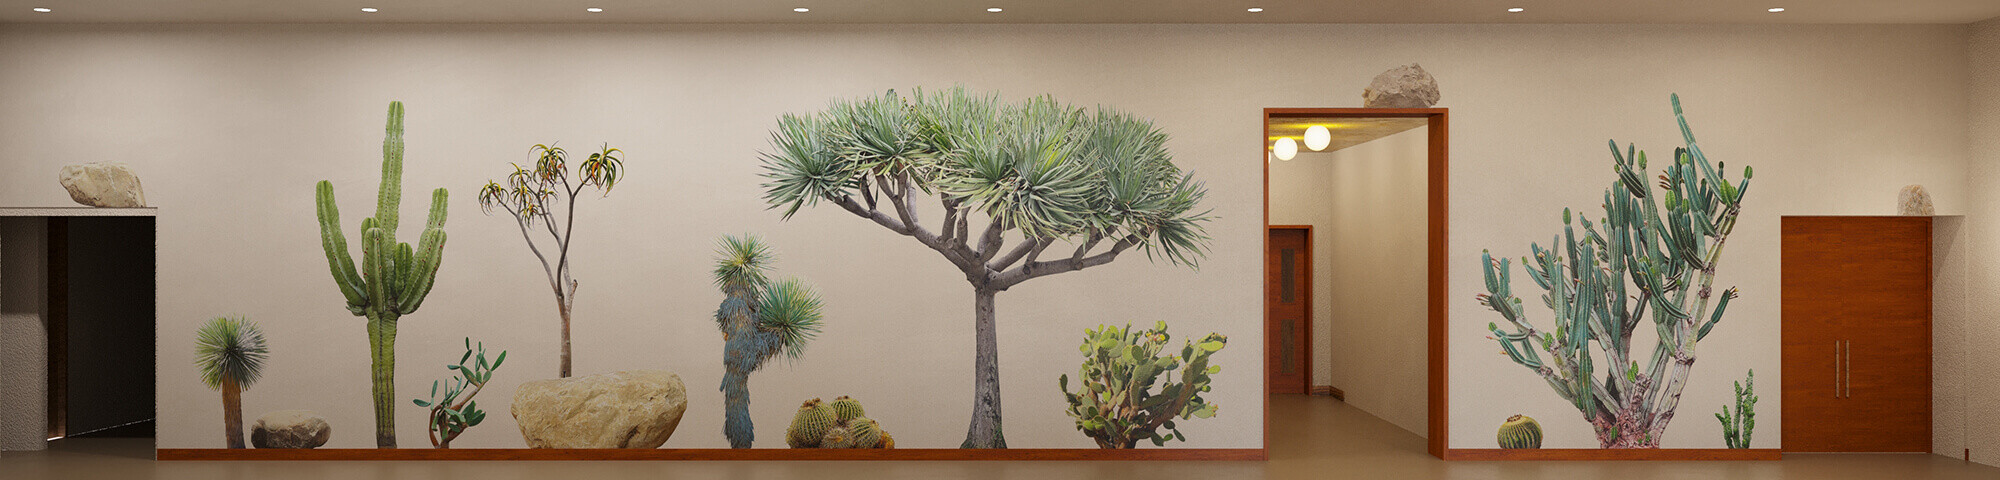 mural depicting desert plants 